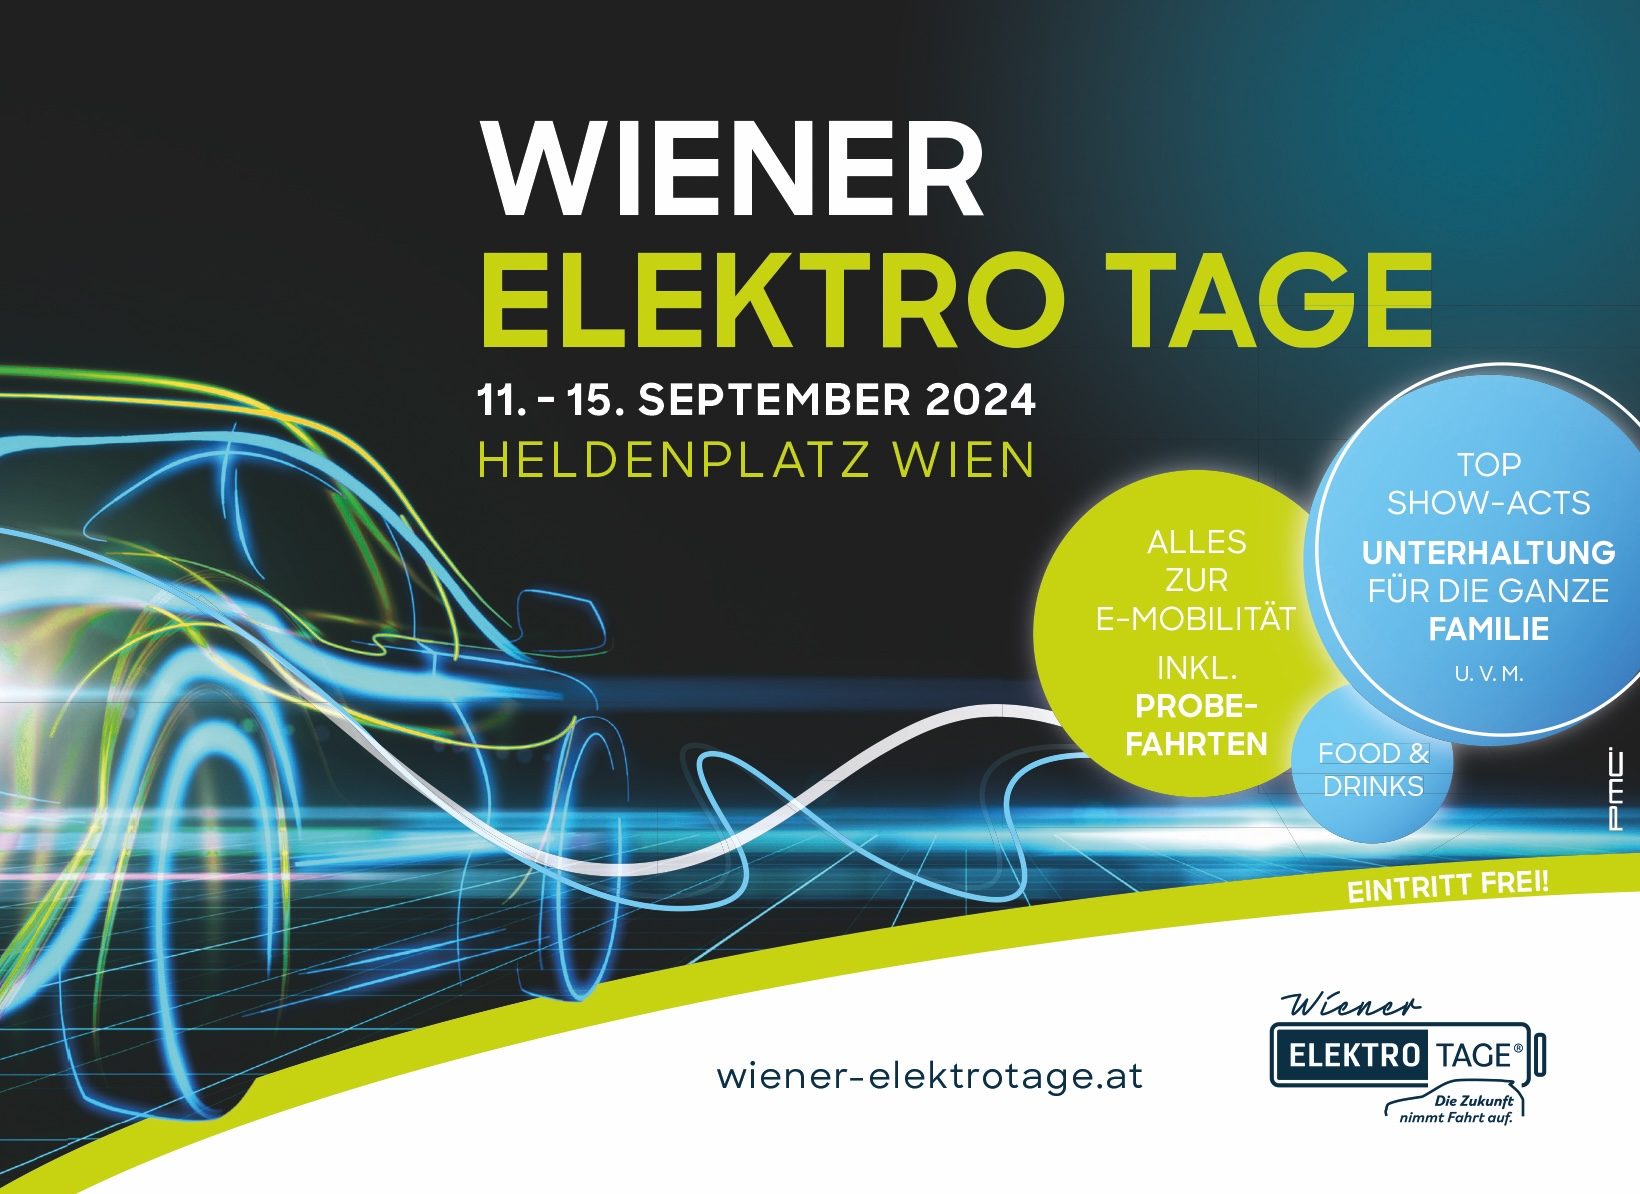 Wiener Elektro Tage 2024 von 11. bis 15. September am Heldenplatz.